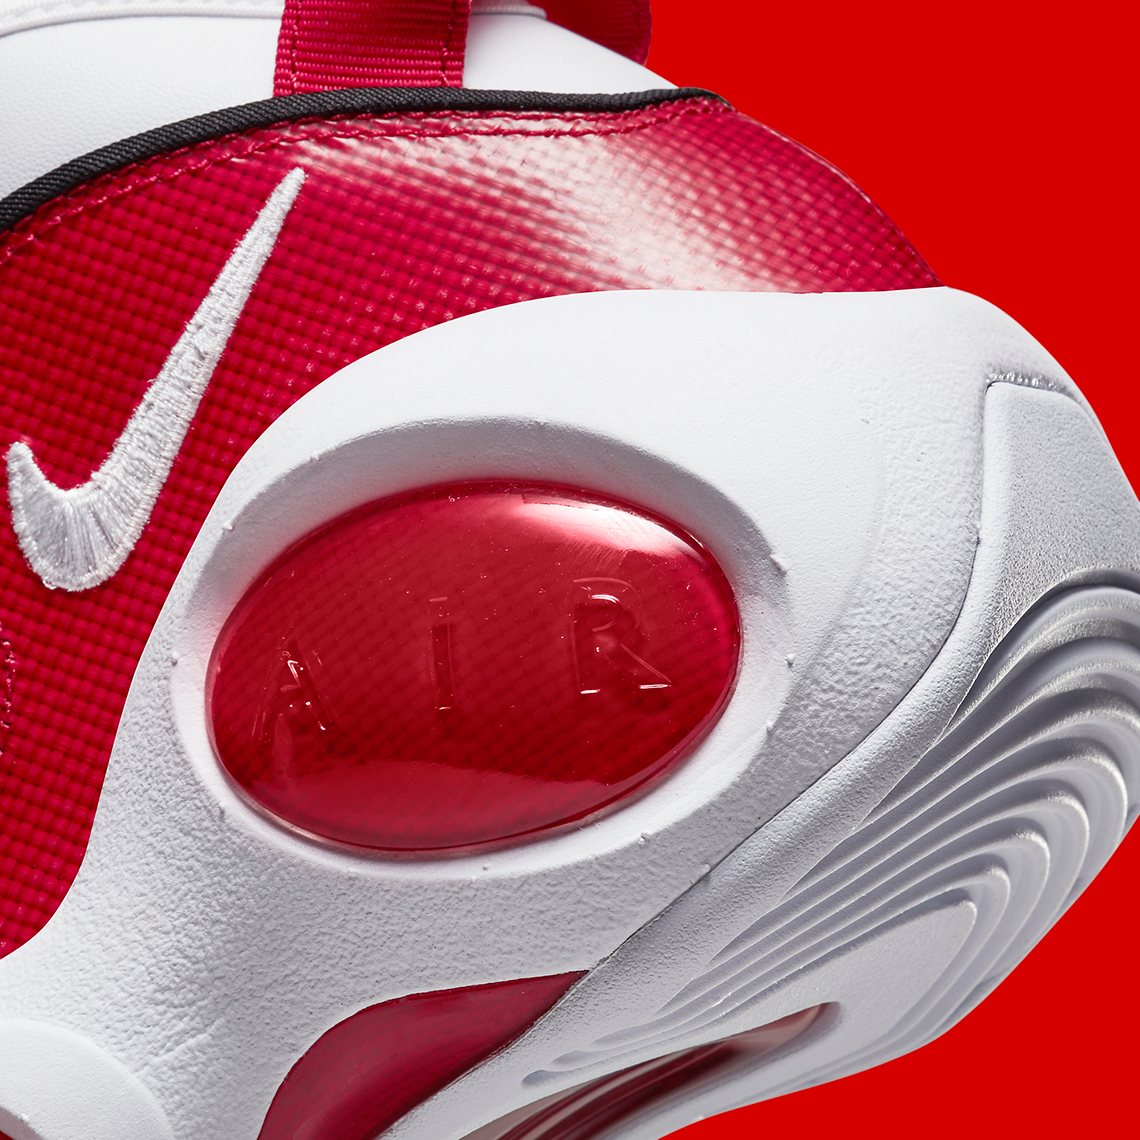 Nike Pegasus Nike w air max 97 lx White Red Dx1165 1004